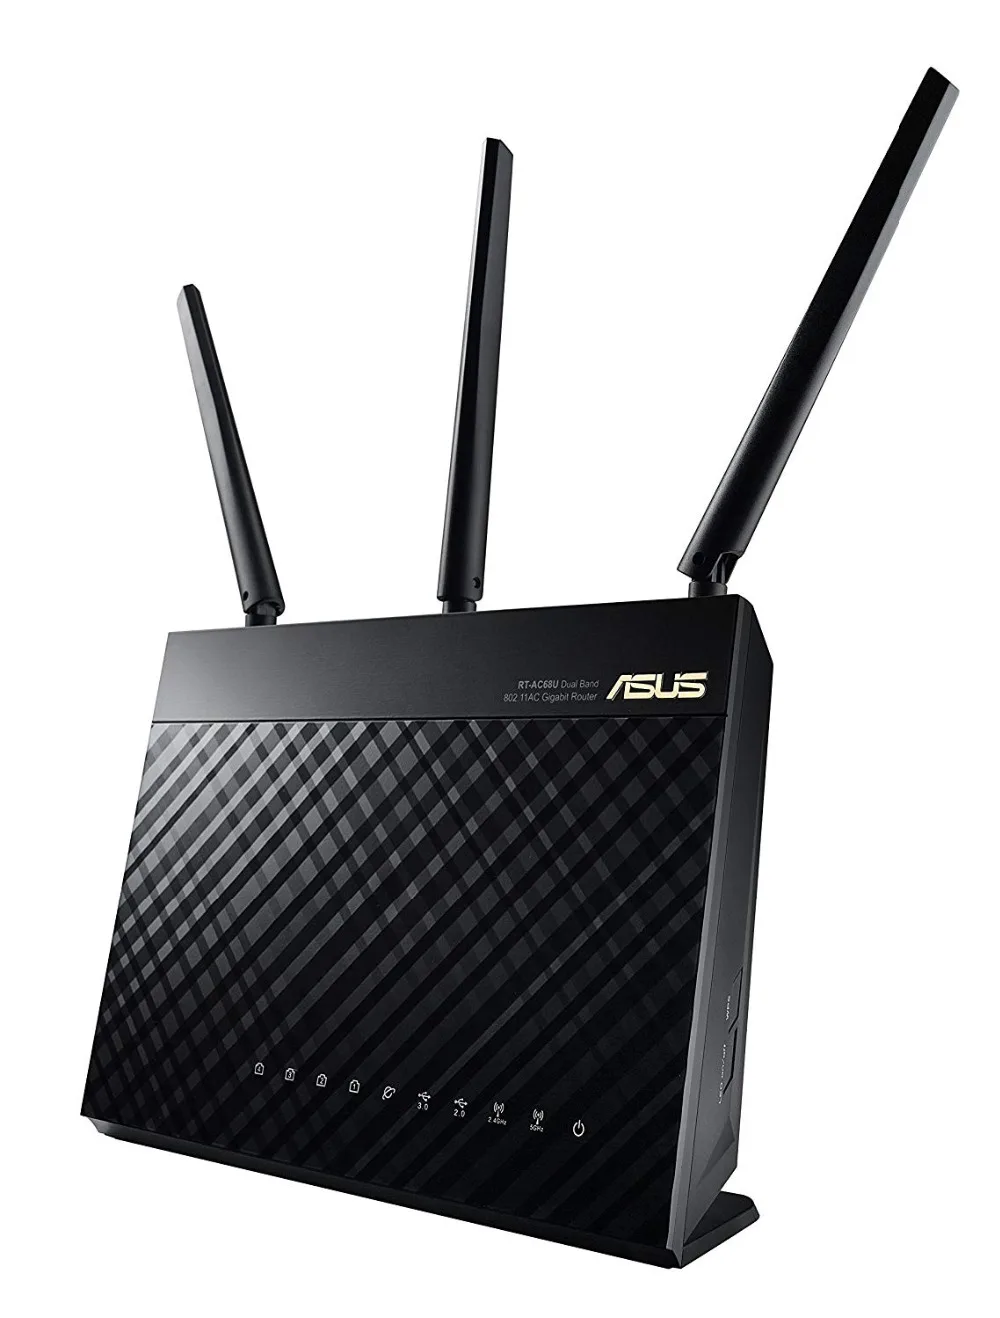 ASUS RT-AC68U весь дом двухдиапазонный AiMesh Wi-Fi роутер обновляемый Merlin AC1900 1900 Мбит/с aiproadth сетевой безопасности по тренду